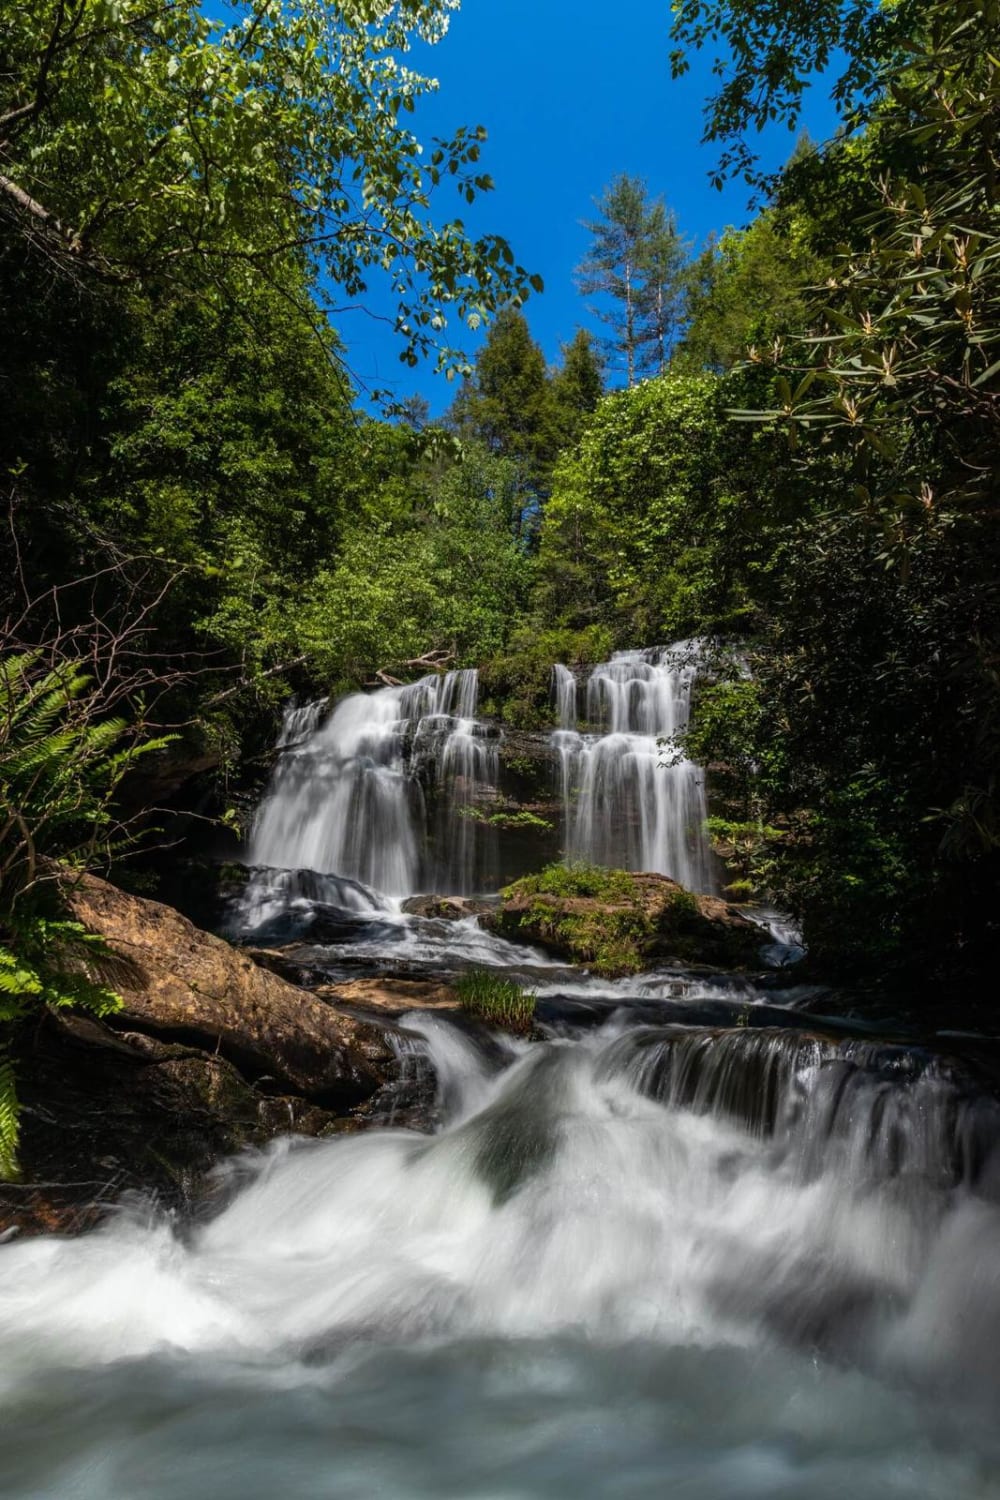 Long Creek Falls – RD 755